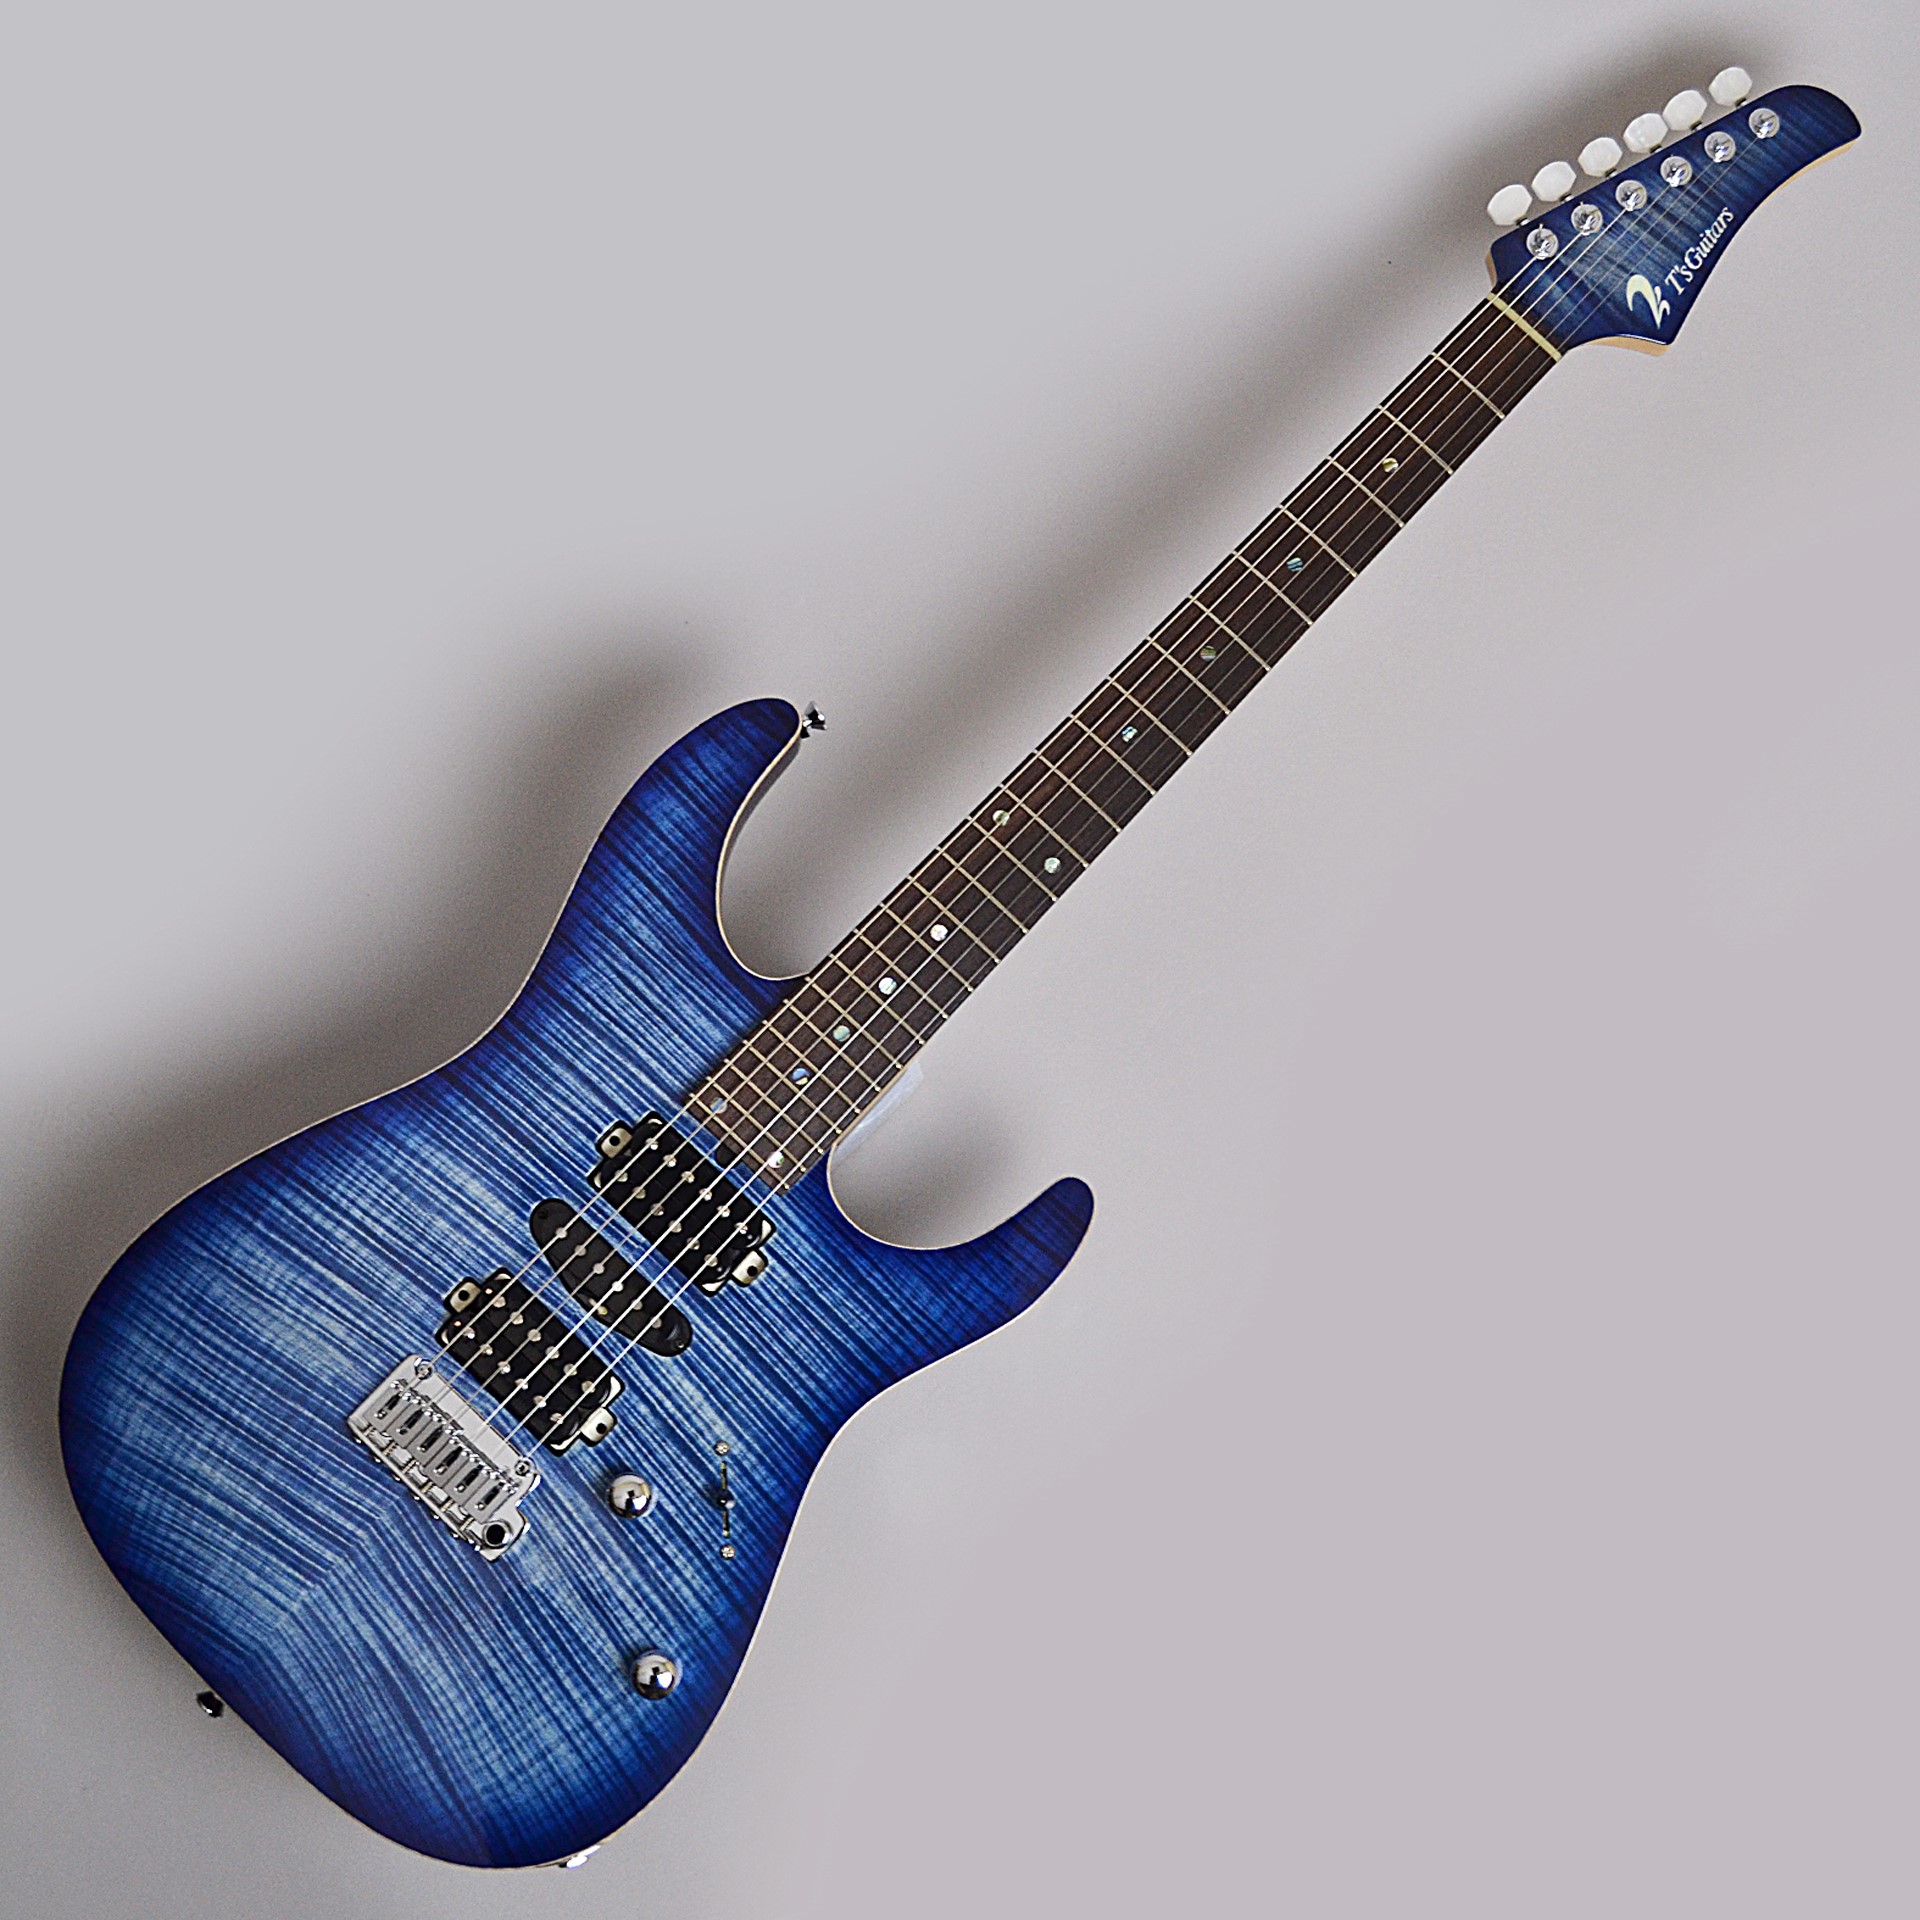 杢目選定品のT's Guitars『DST-Pro24 Flame Top Trans Blue Denim